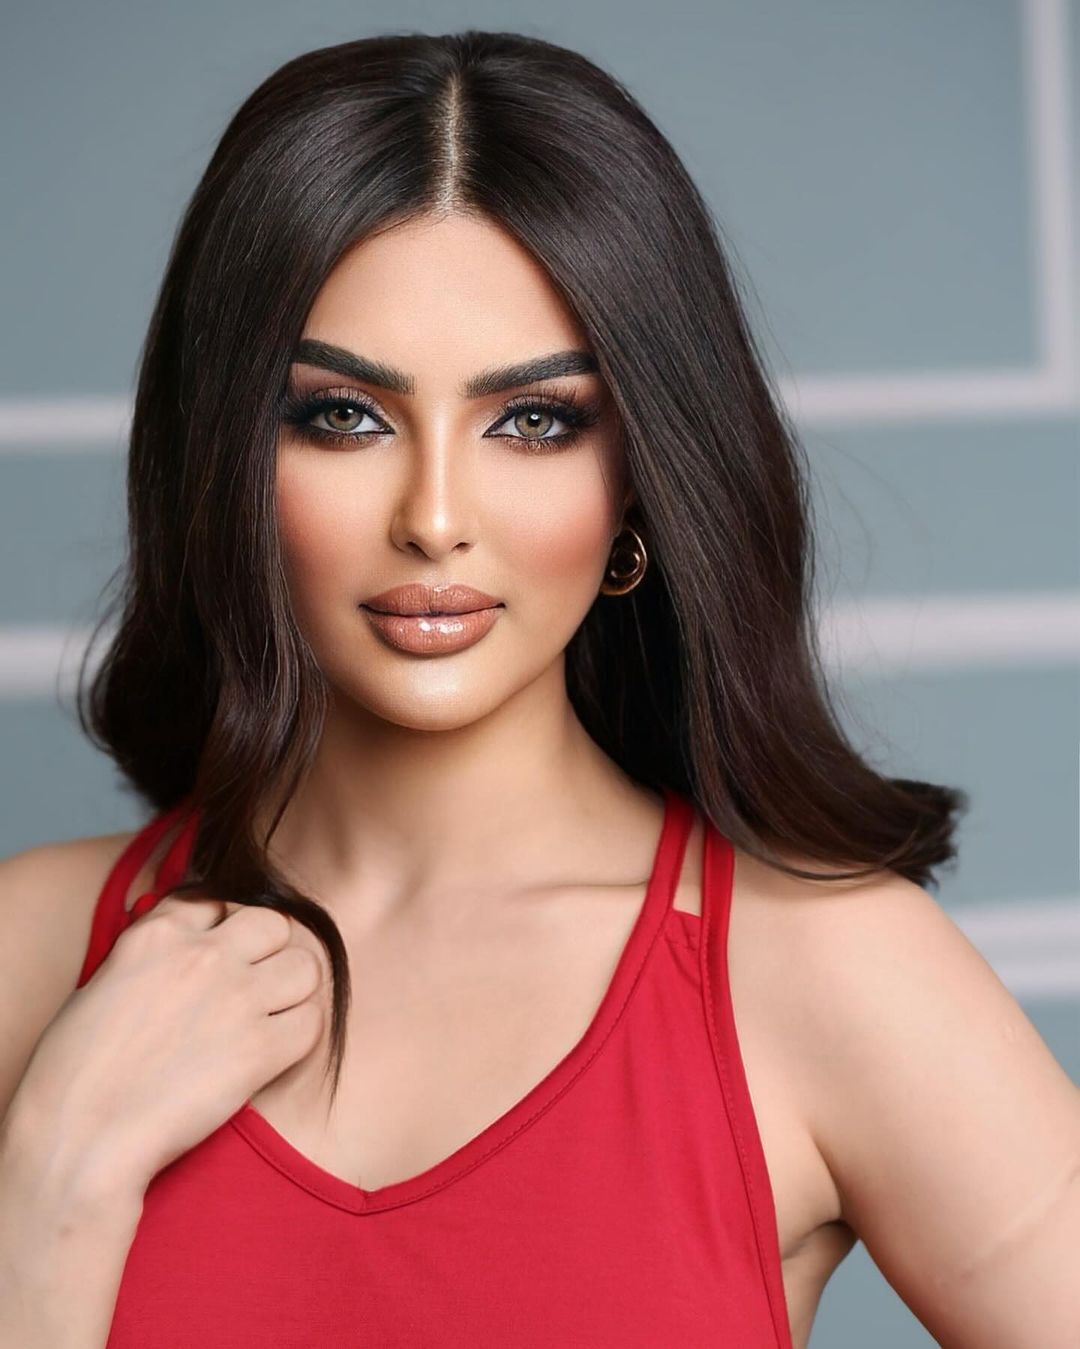 Організатори "Міс Всесвіт" спростували участь Саудівської Аравії в конкурсі і звинуватили 27-річну модель у брехні